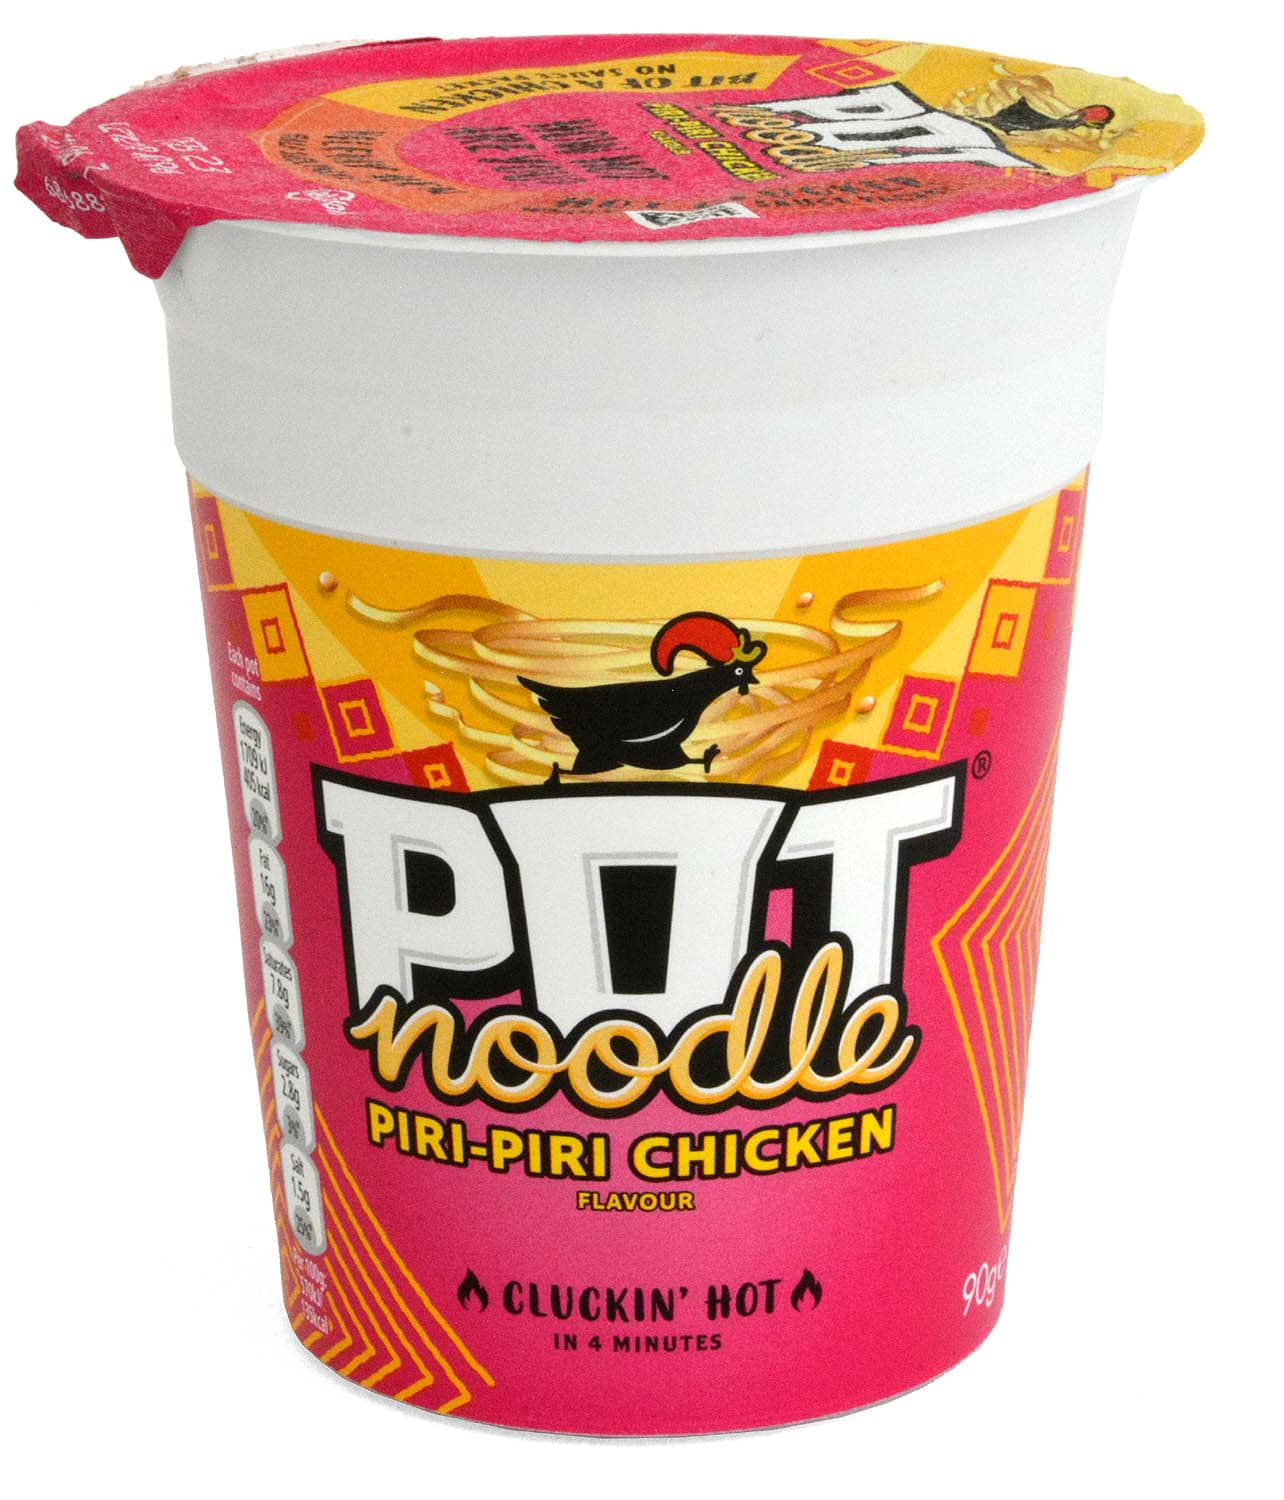 Picture of Pot Noodle Piri-Piri Chicken